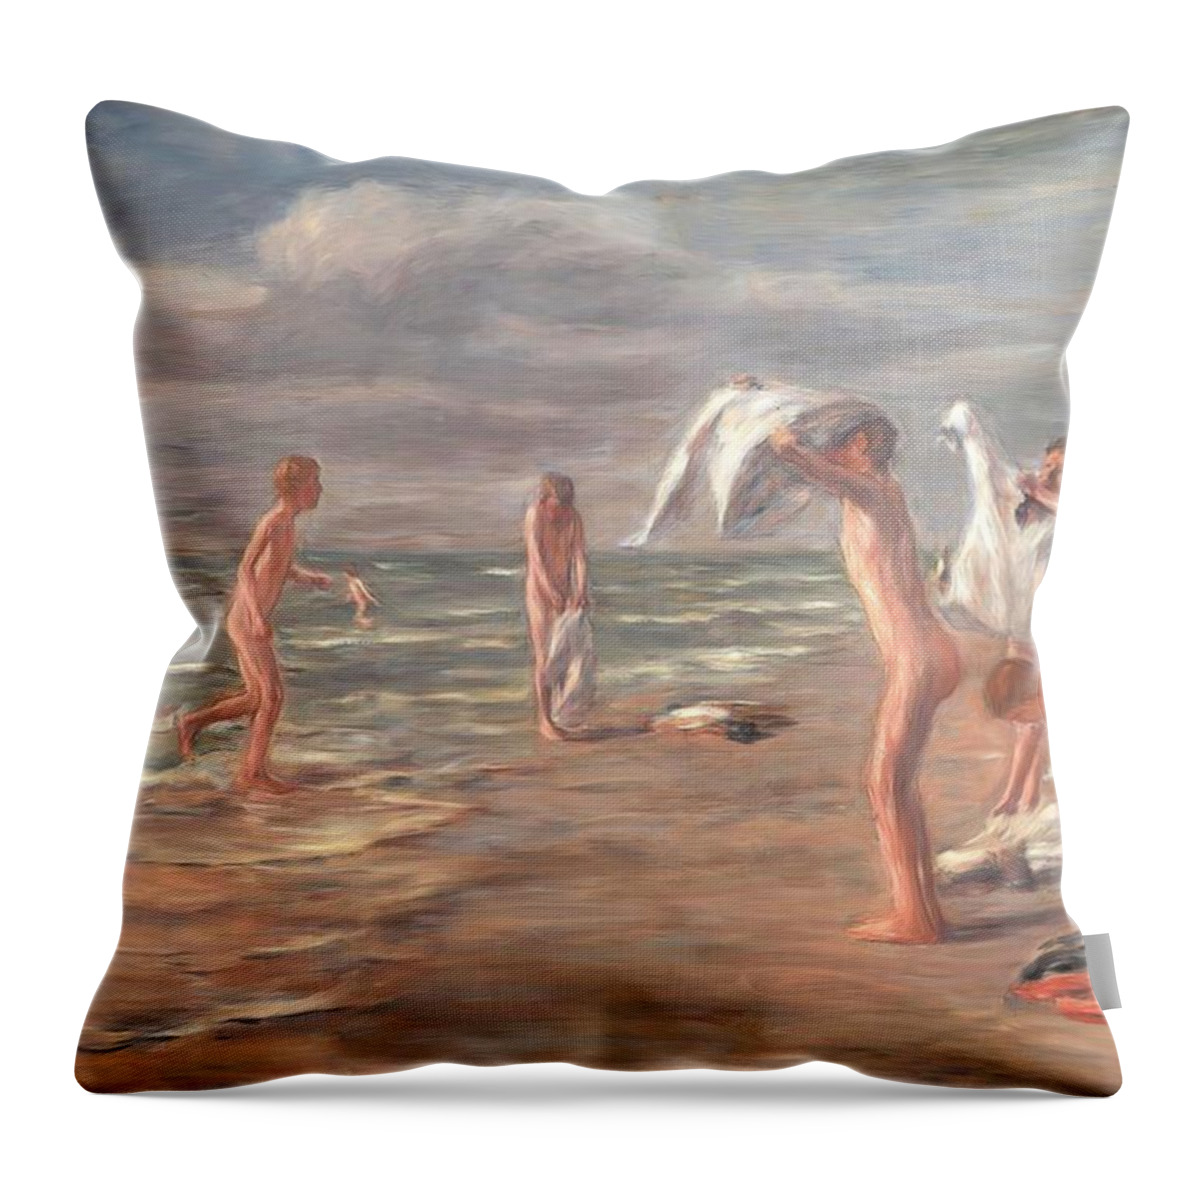 Badende Jungen Throw Pillow featuring the painting Badende Jungen by Max Liebermann